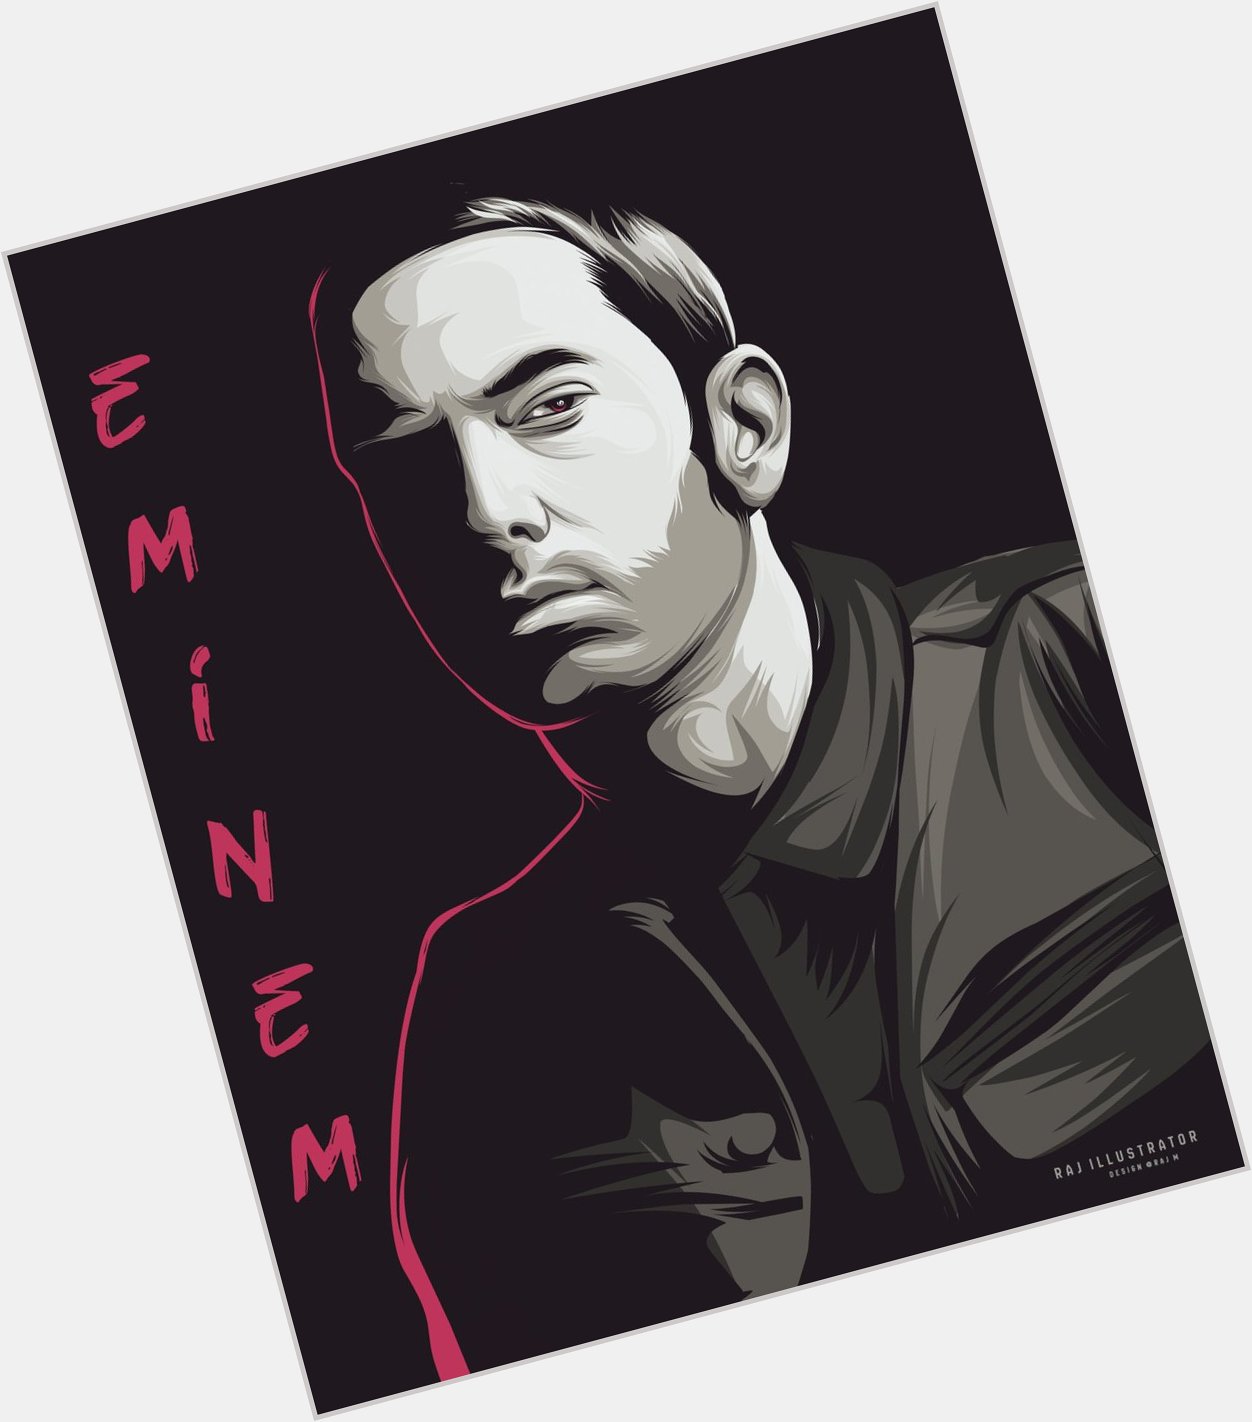 Happy birthday rap god Eminem  Eminem   